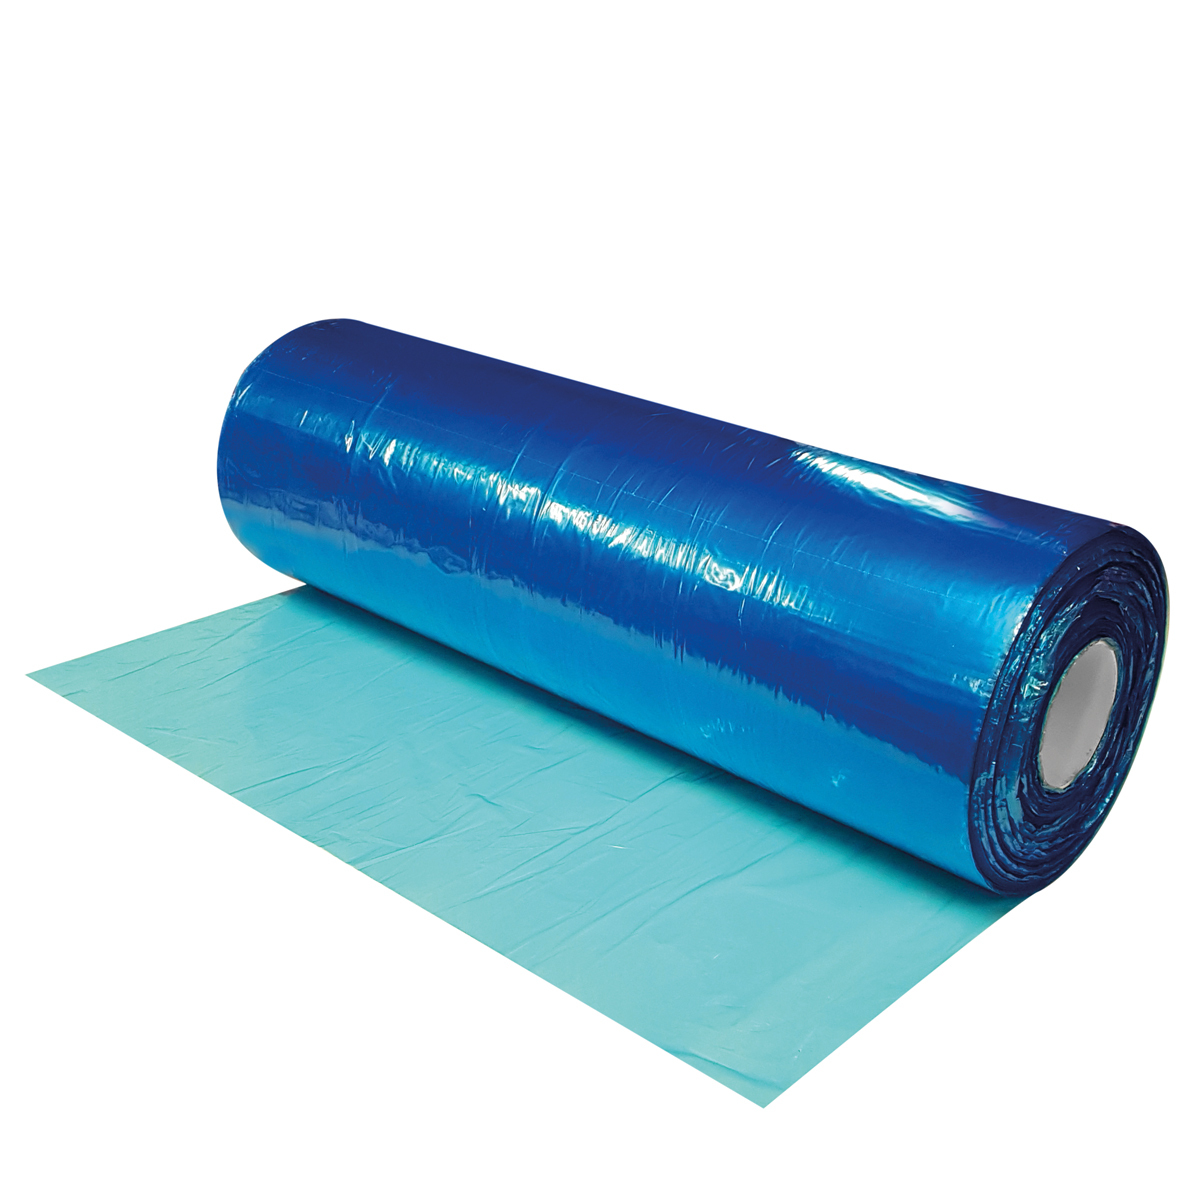 Rippa Sheet Blue HD 420x600mm x 25um, 2000/roll on PVC core